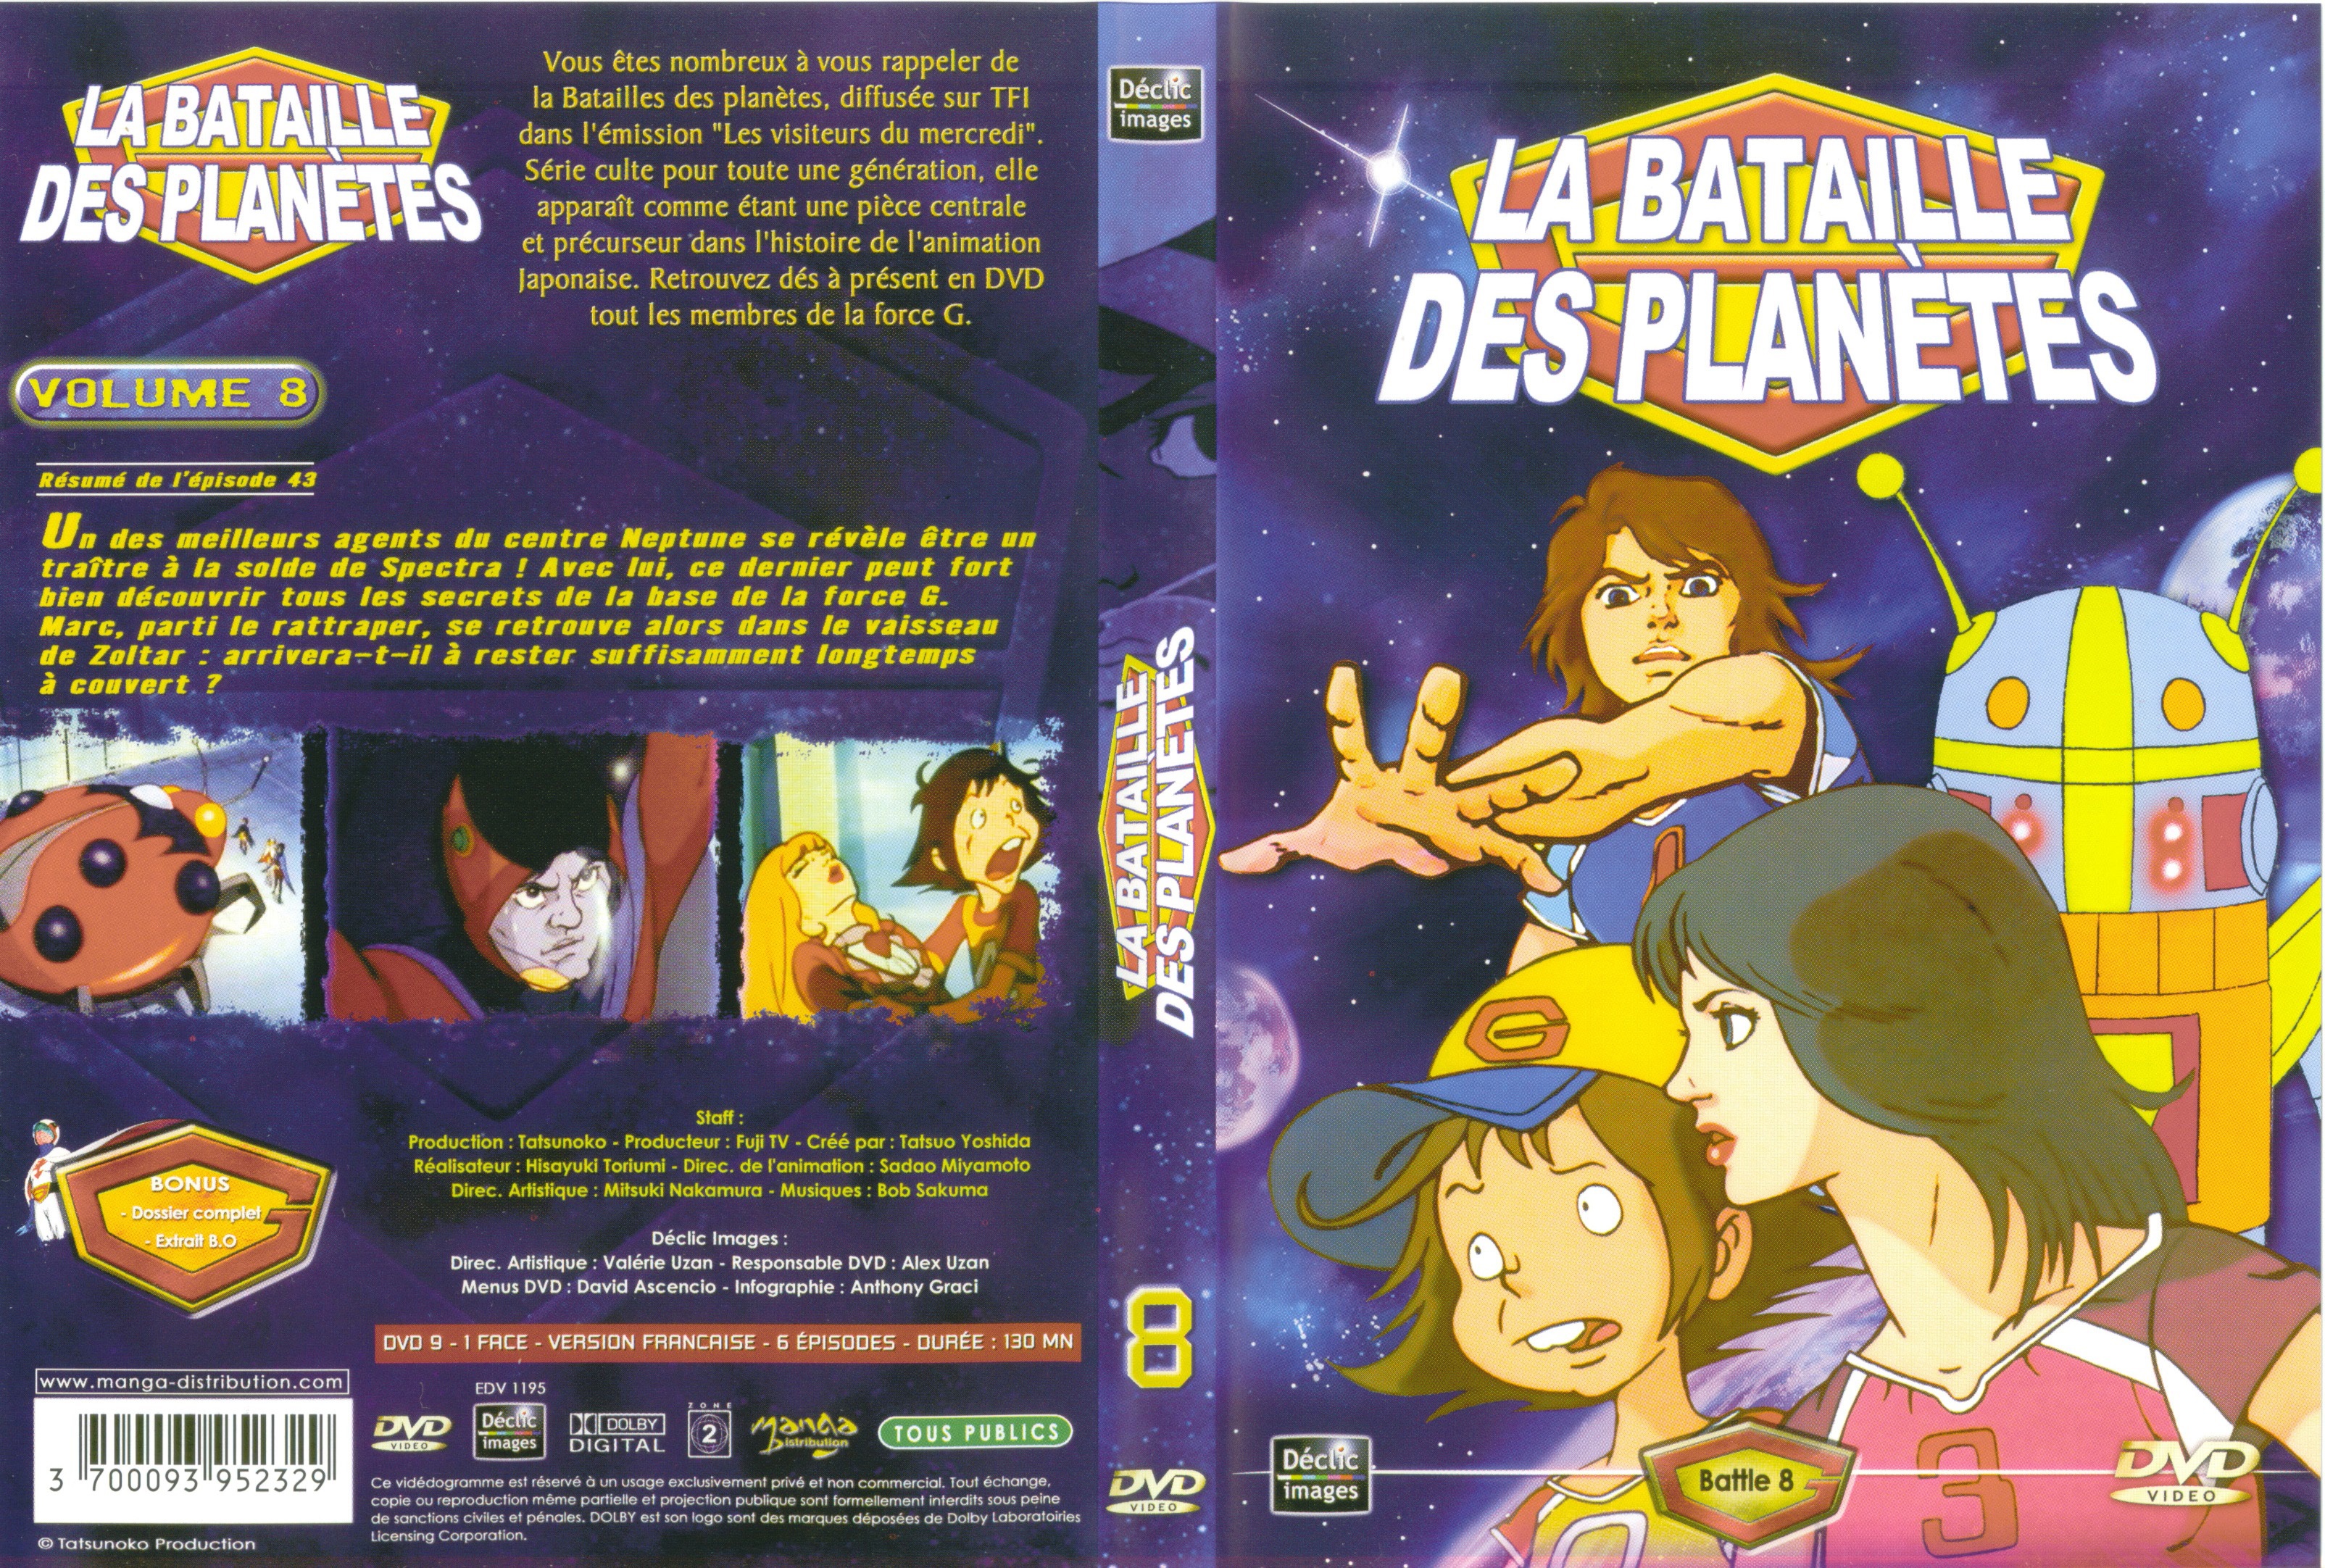 Jaquette DVD La bataille des planetes DVD 08